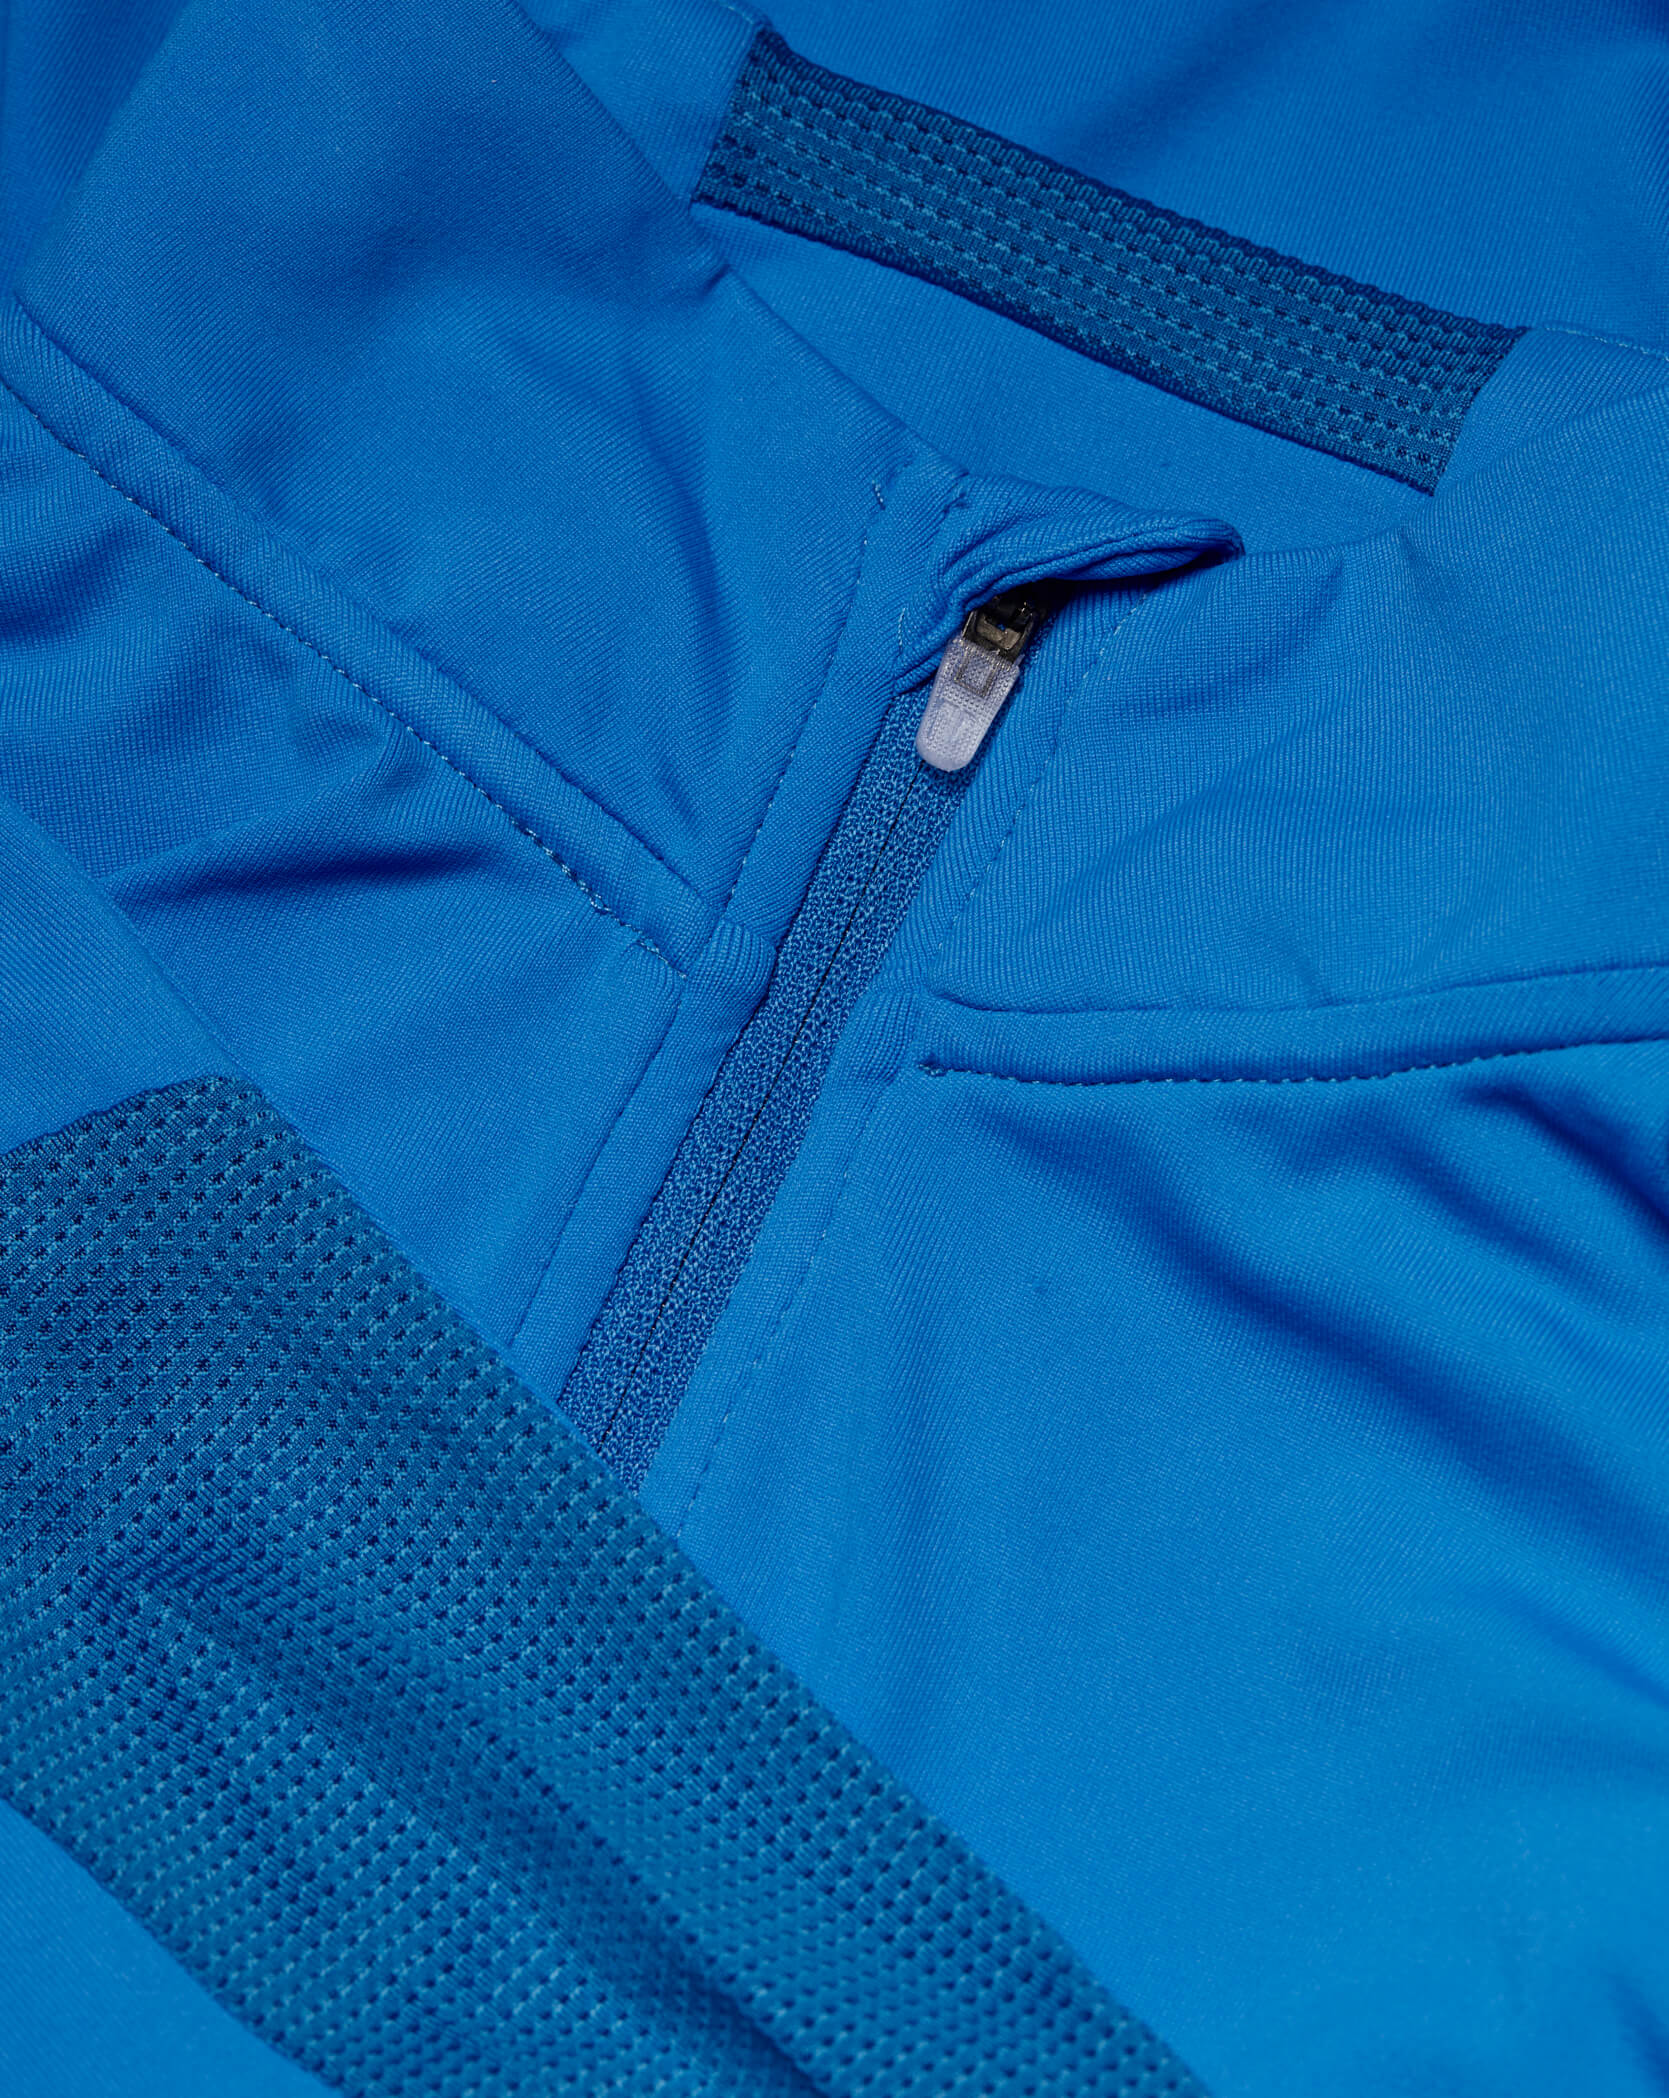 Blue Twinzz activewear zip top